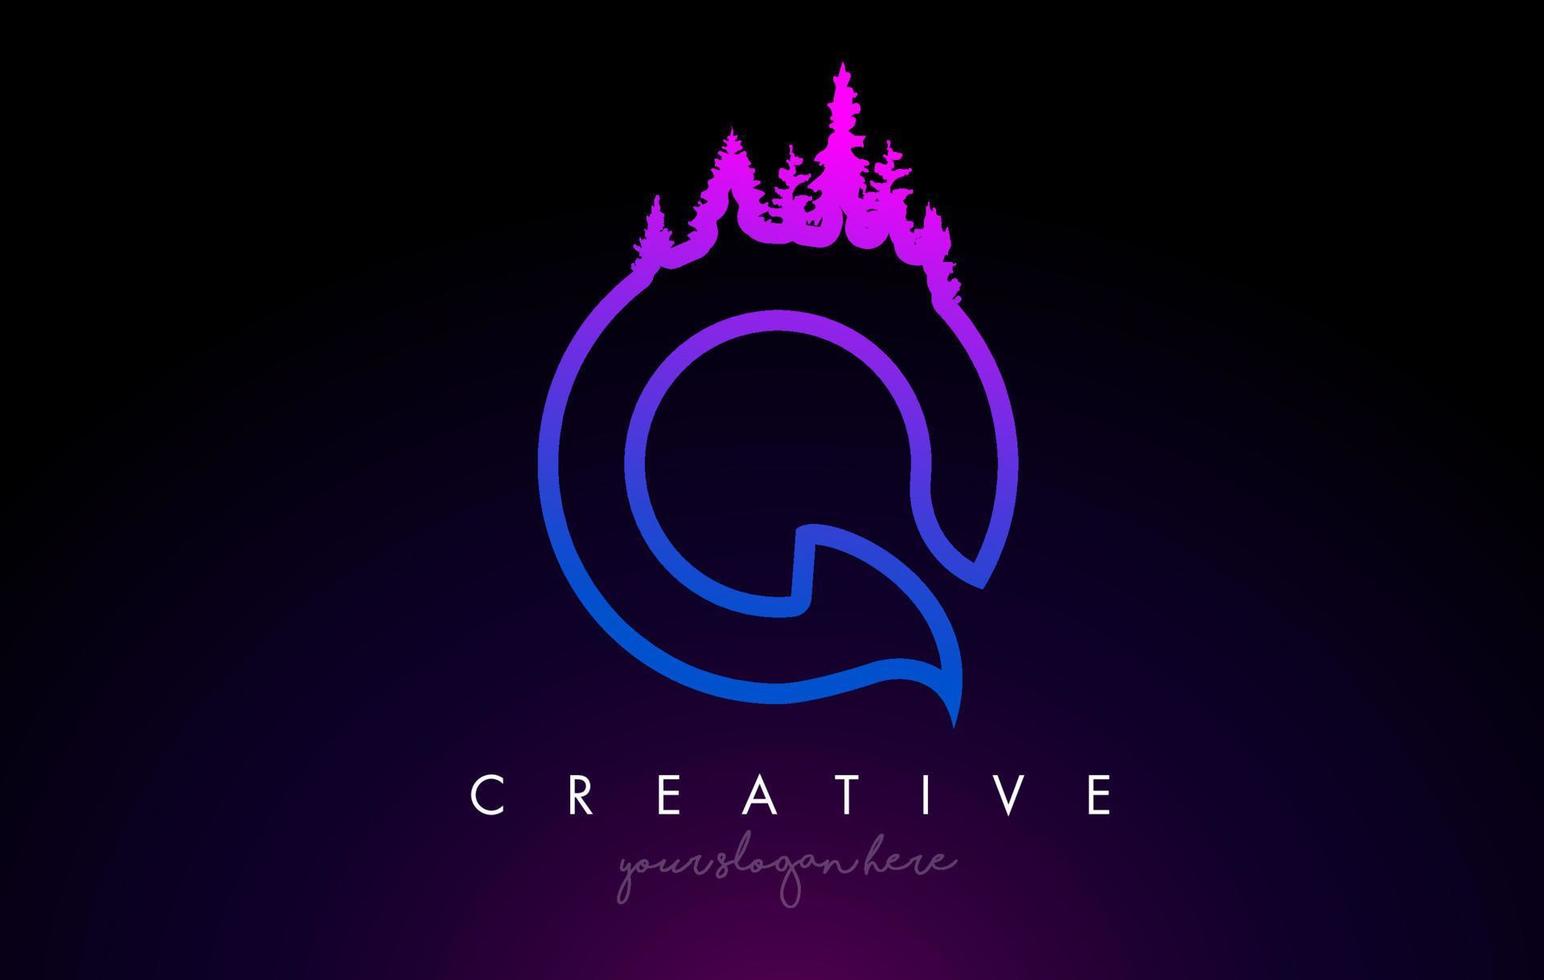 Idea creativa del logotipo de la letra q con pinos. Diseño de letra q con pino en la parte superior. vector